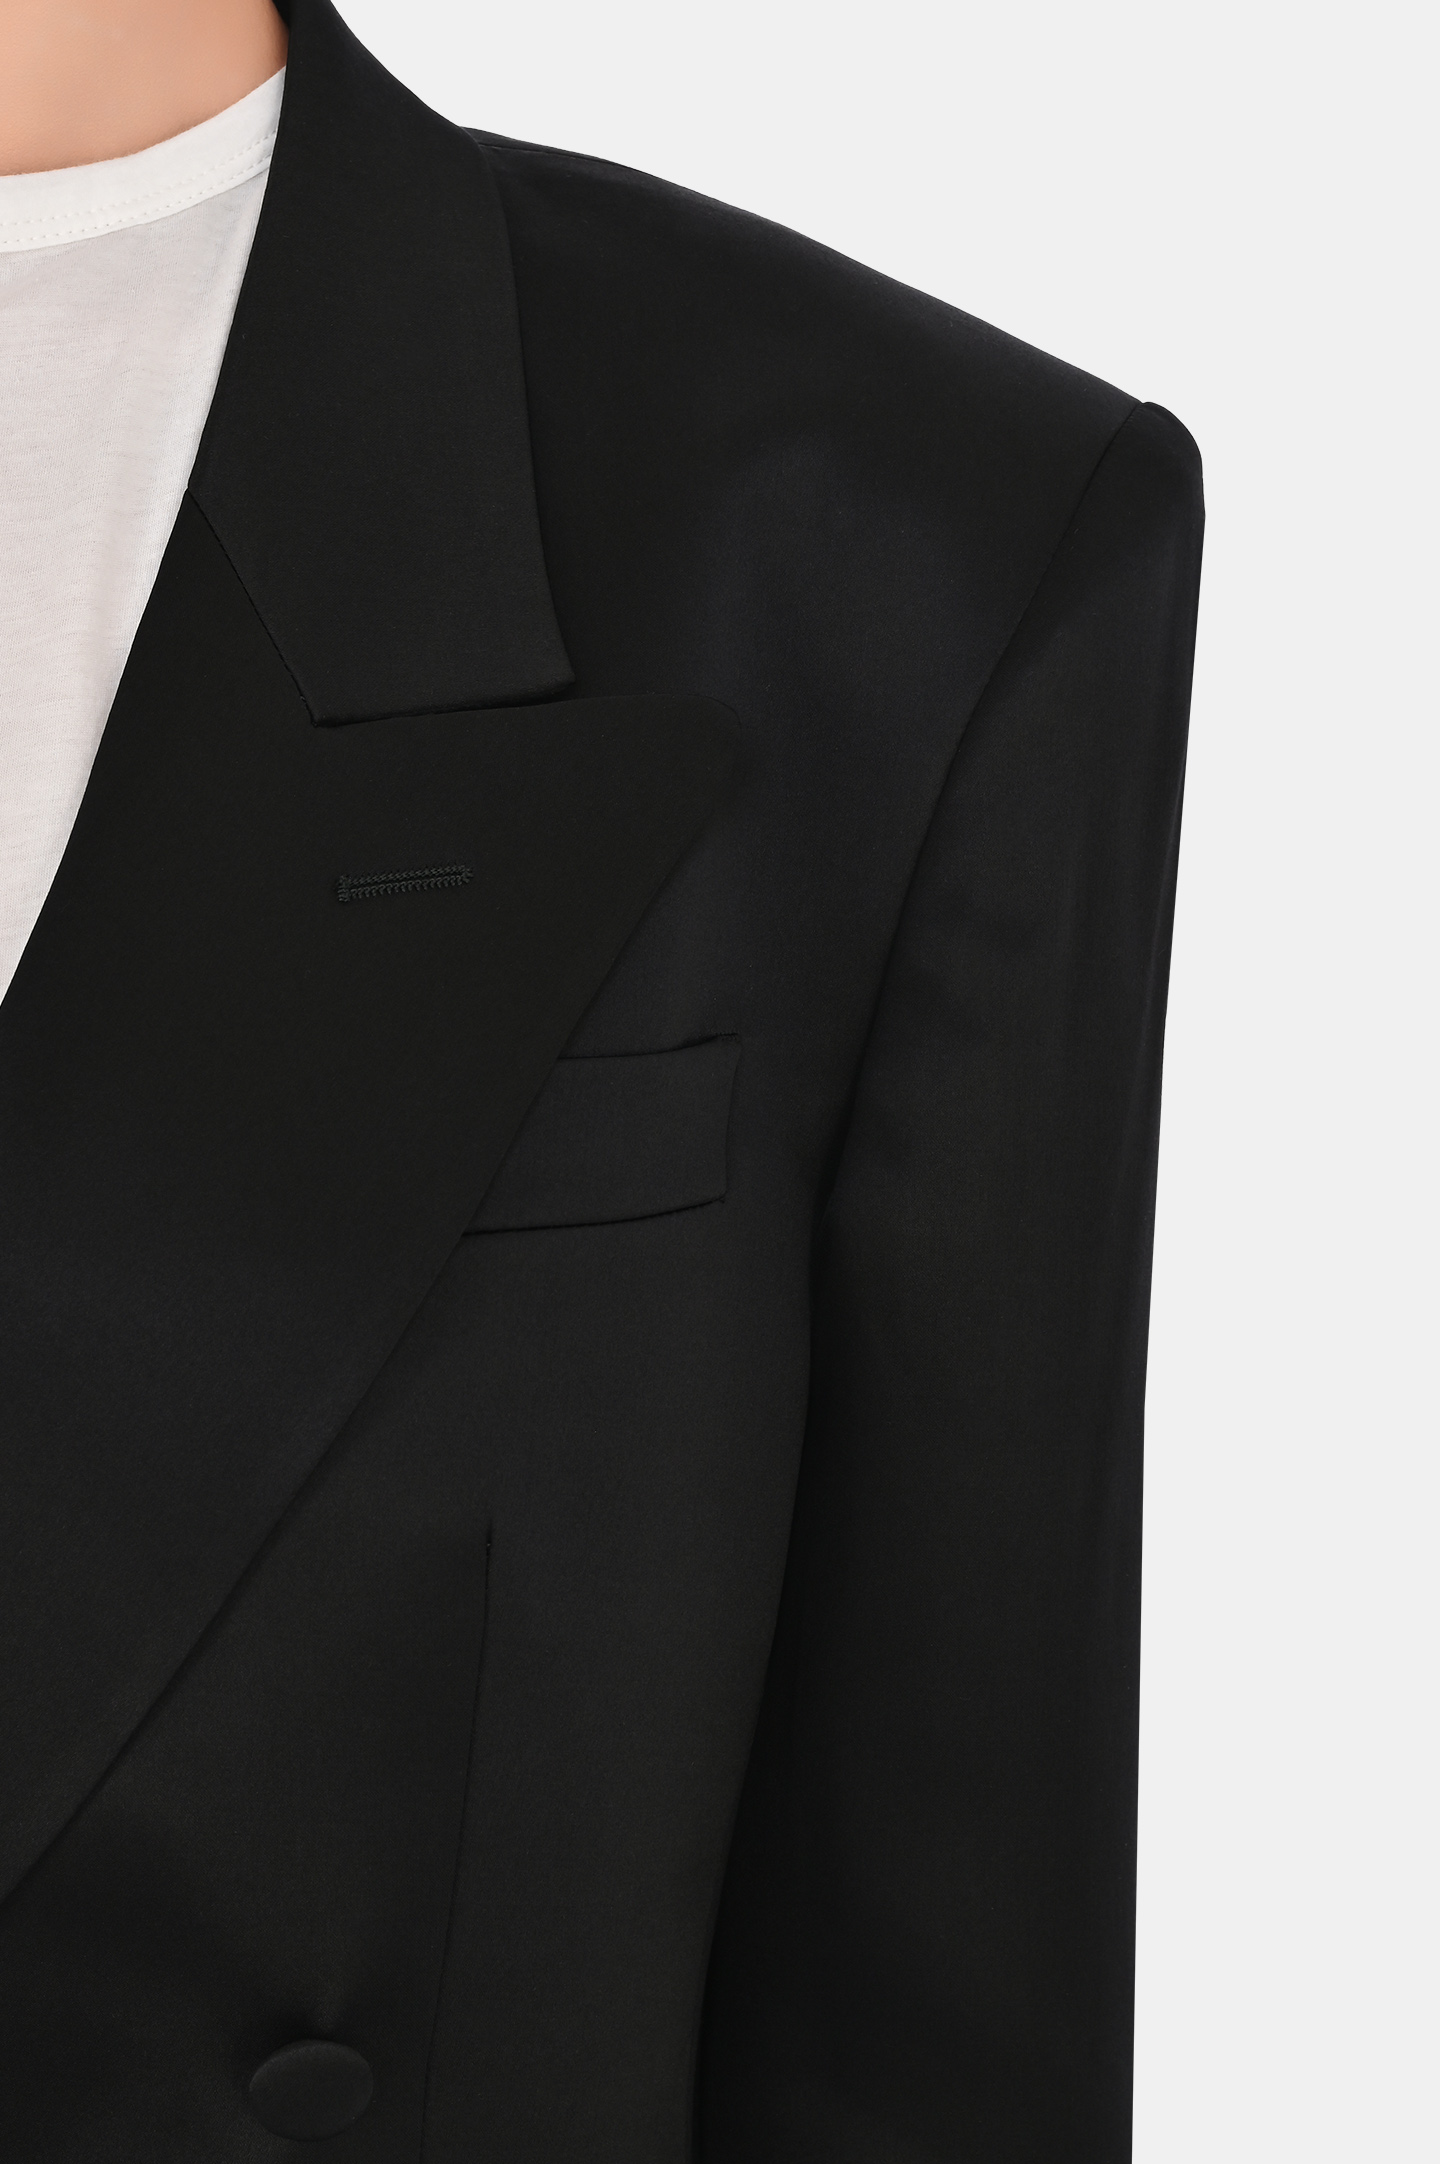 Жакет из шелка двухбортный с карманами JACOB LEE WSB047SS24-1SSB, цвет: Черный, Женский